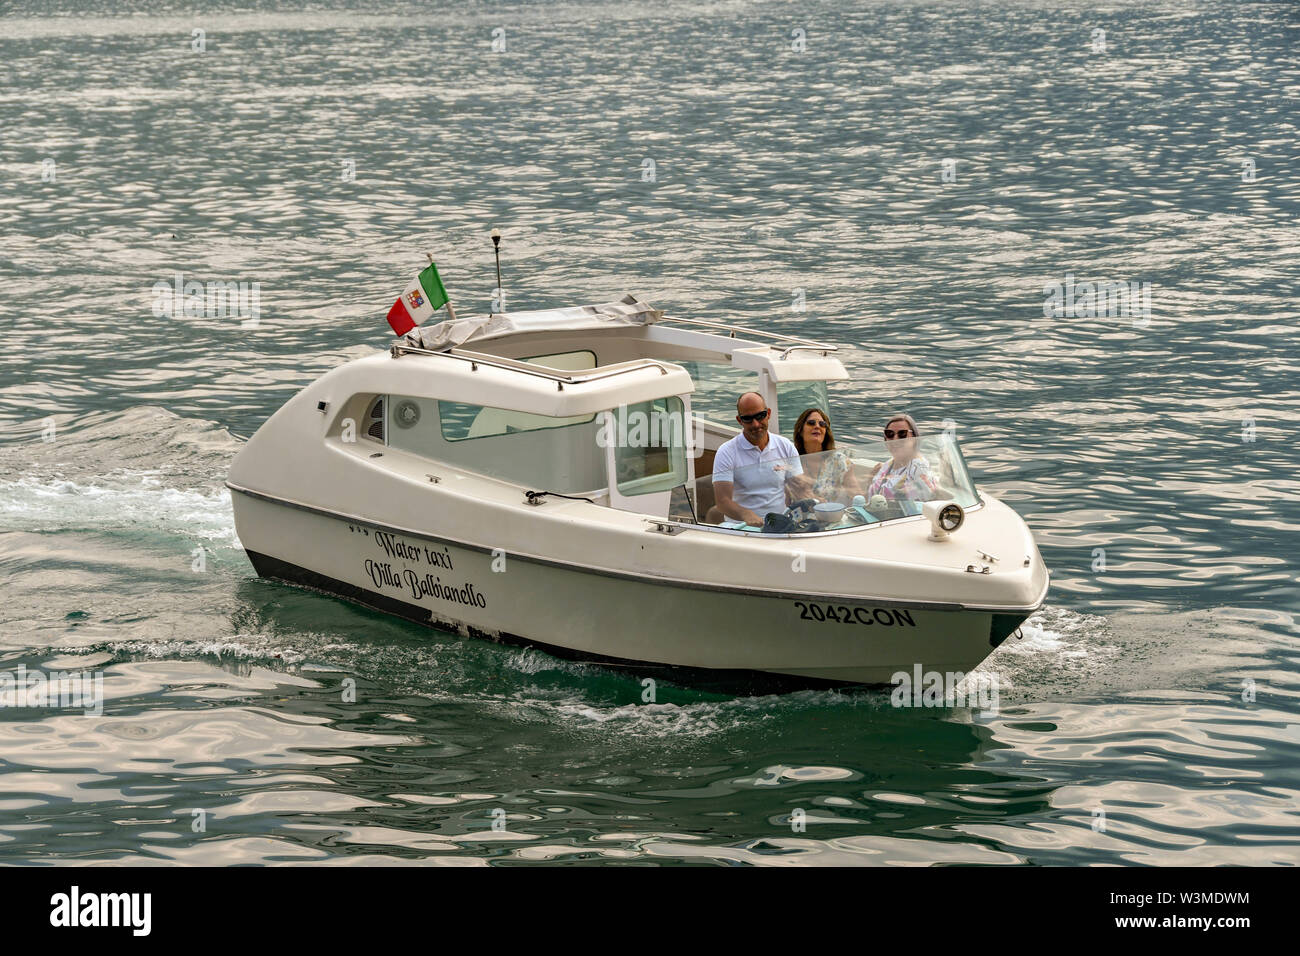 Le lac de Côme, Italie - Juin 2019 : Le bateau-taxi privé réunissant les visiteurs à l'embarcadère de la Villa Balbianello à Lenno, sur le lac de Côme. Banque D'Images